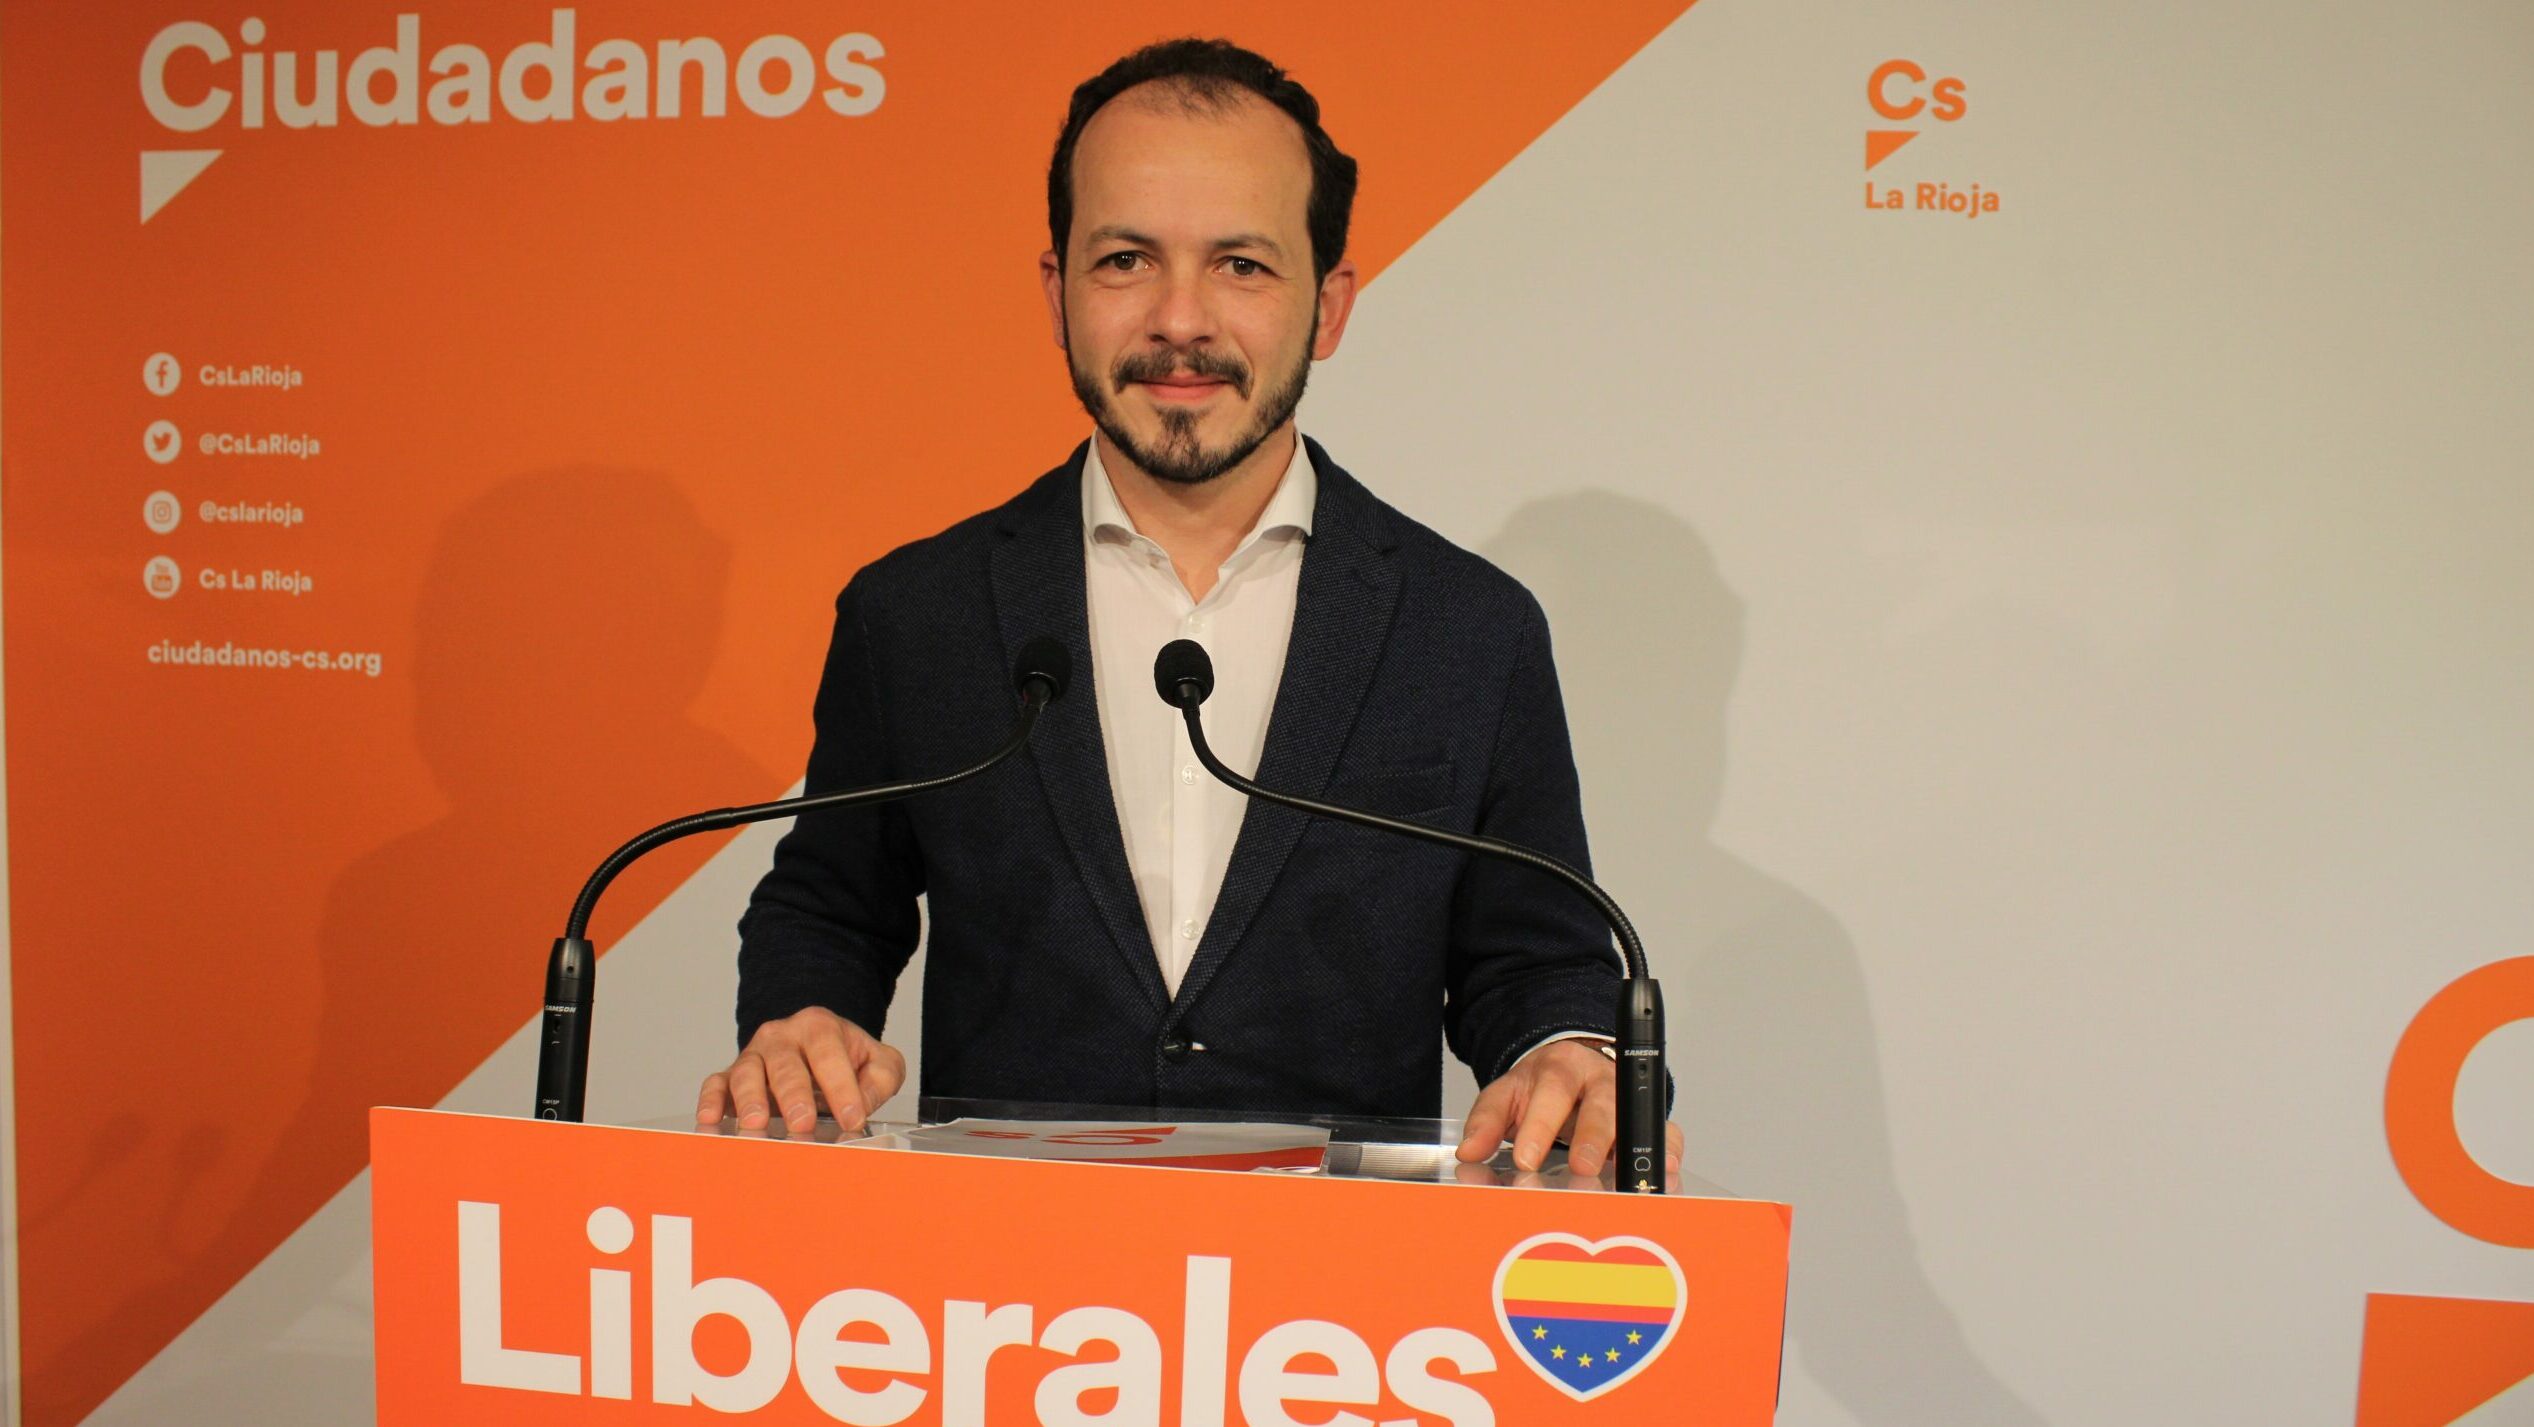 El Comité de Ciudadanos La Rioja se disuelve al dimitir la mayoría de sus miembros